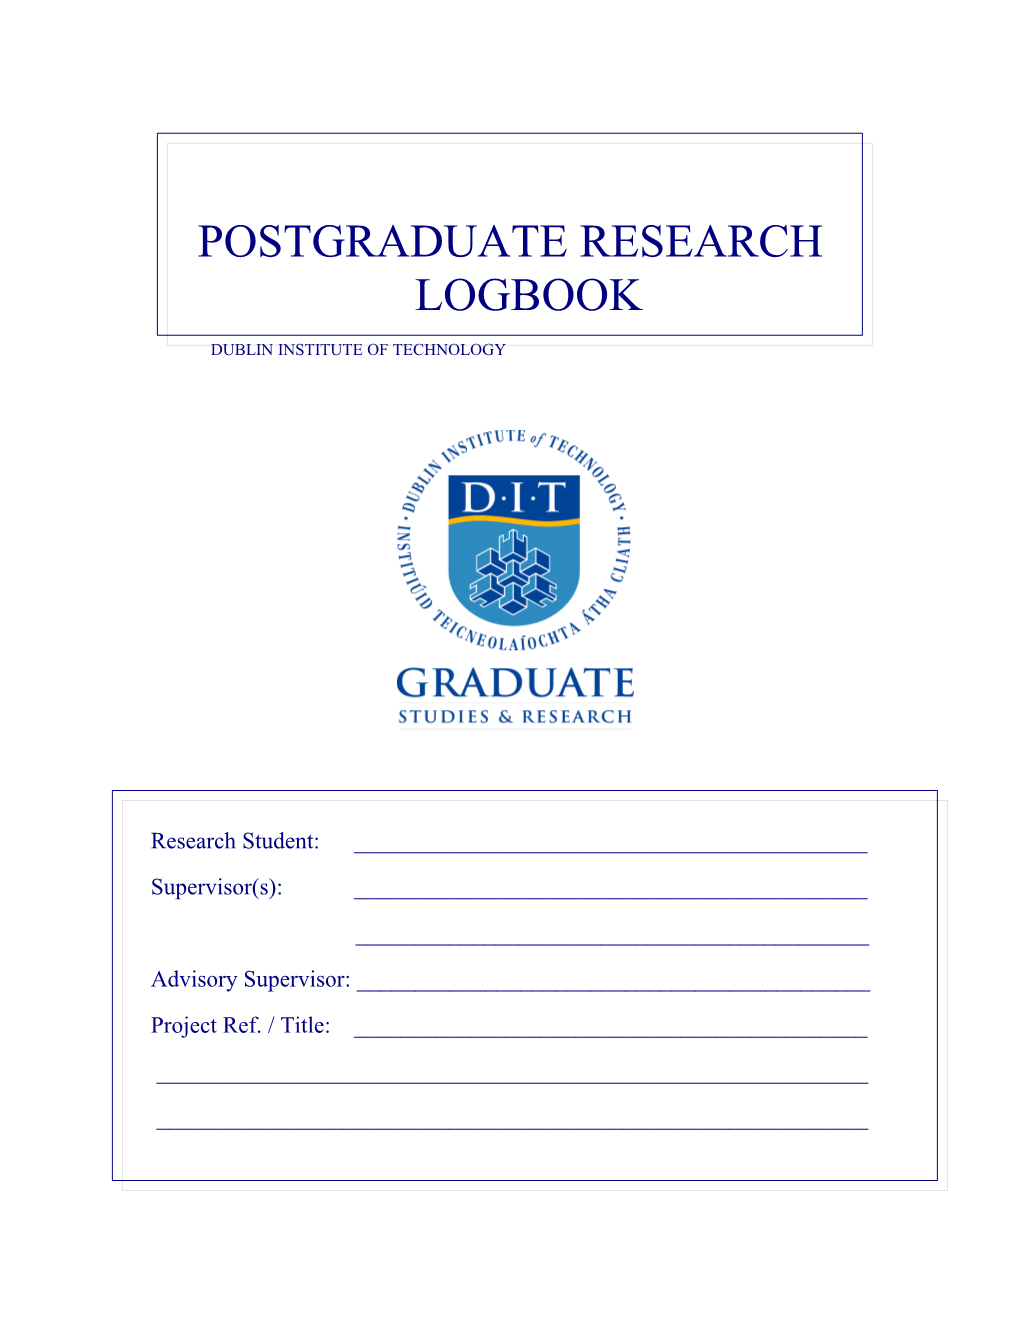 Postgraduate Research Logbook